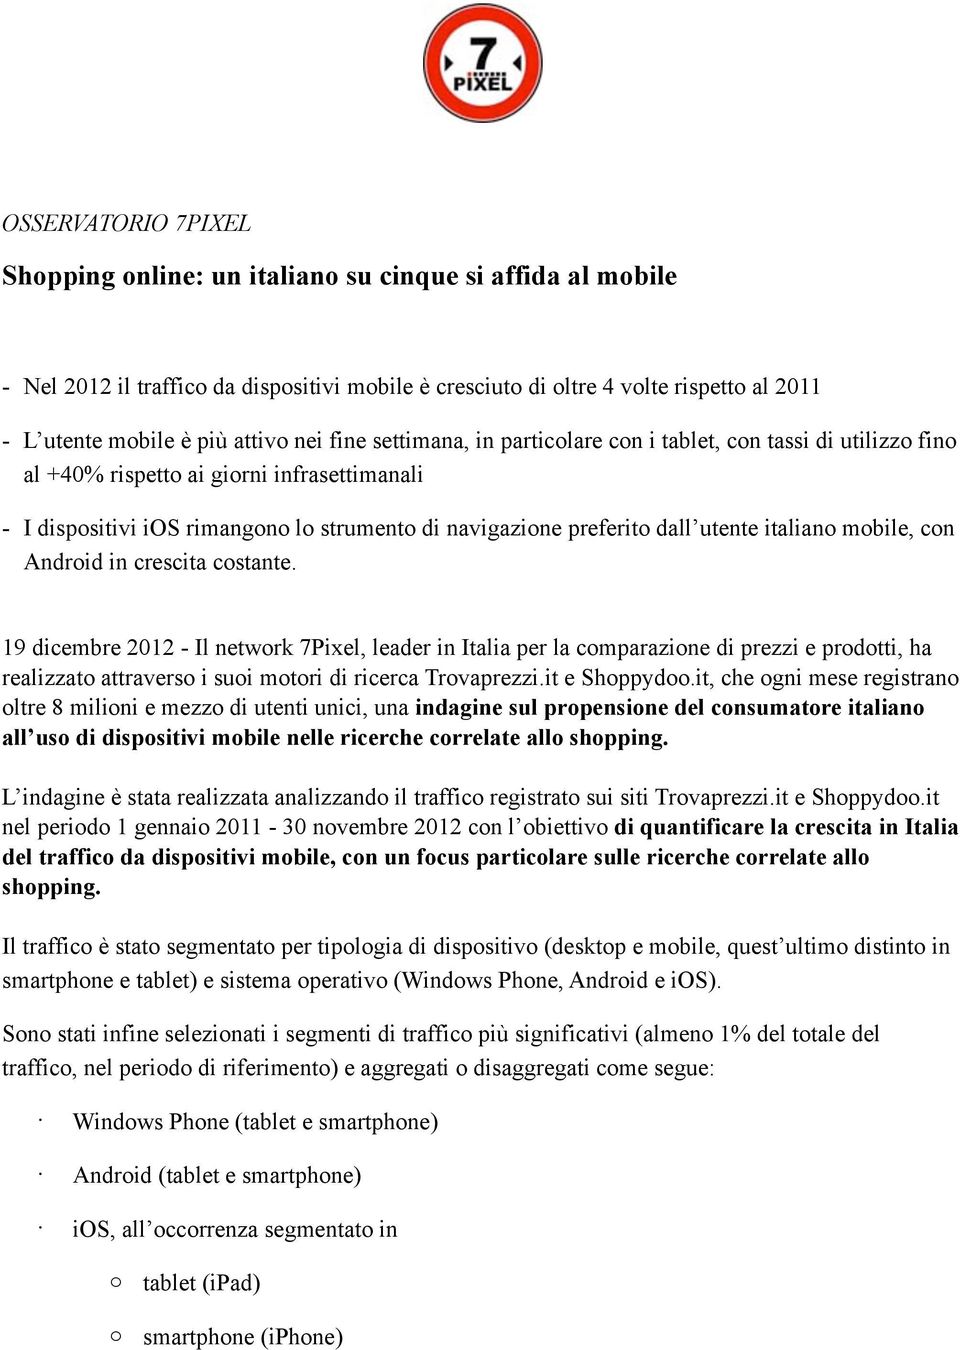 utente italiano mobile, con Android in crescita costante.